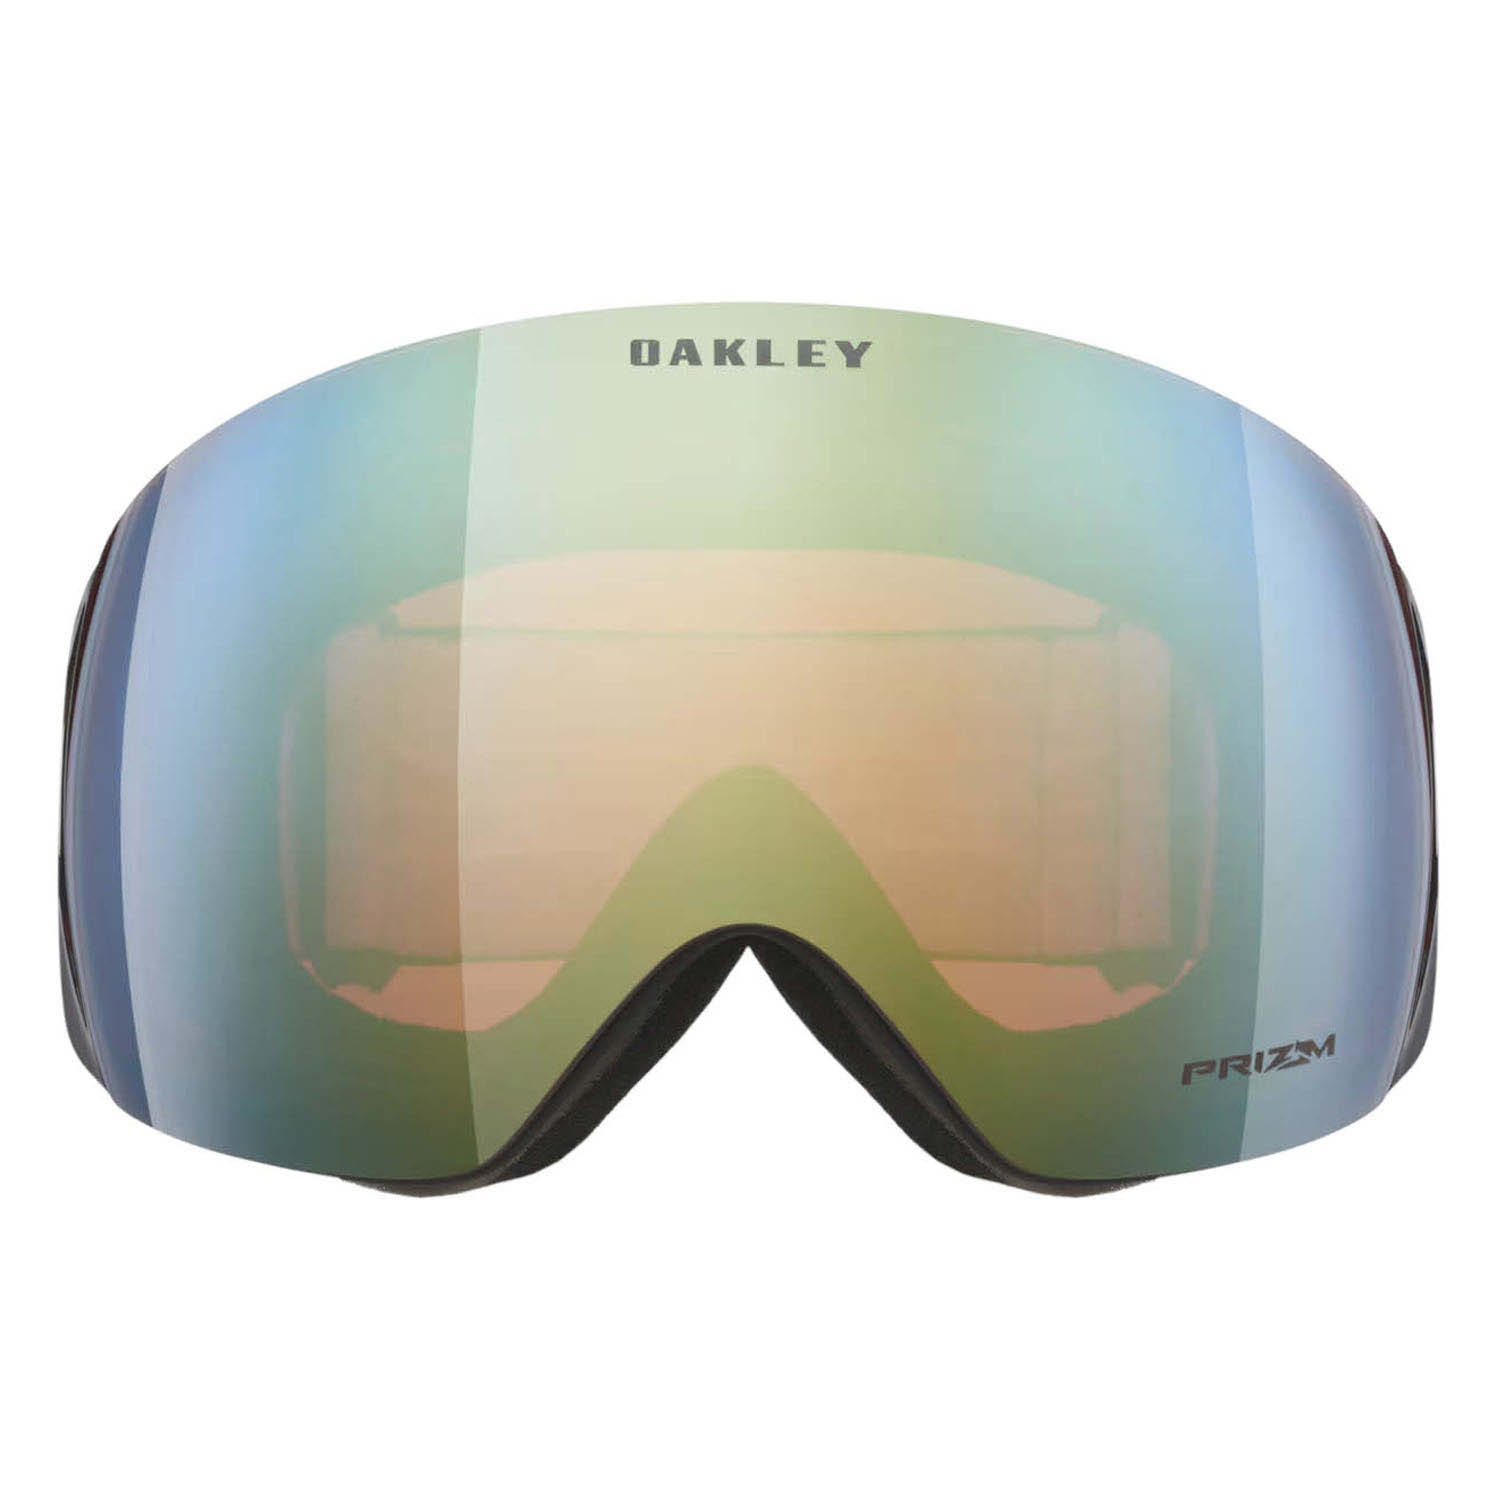 Очки горнолыжные Oakley Flight Deck L Matte Black/Prizm Sage Gold